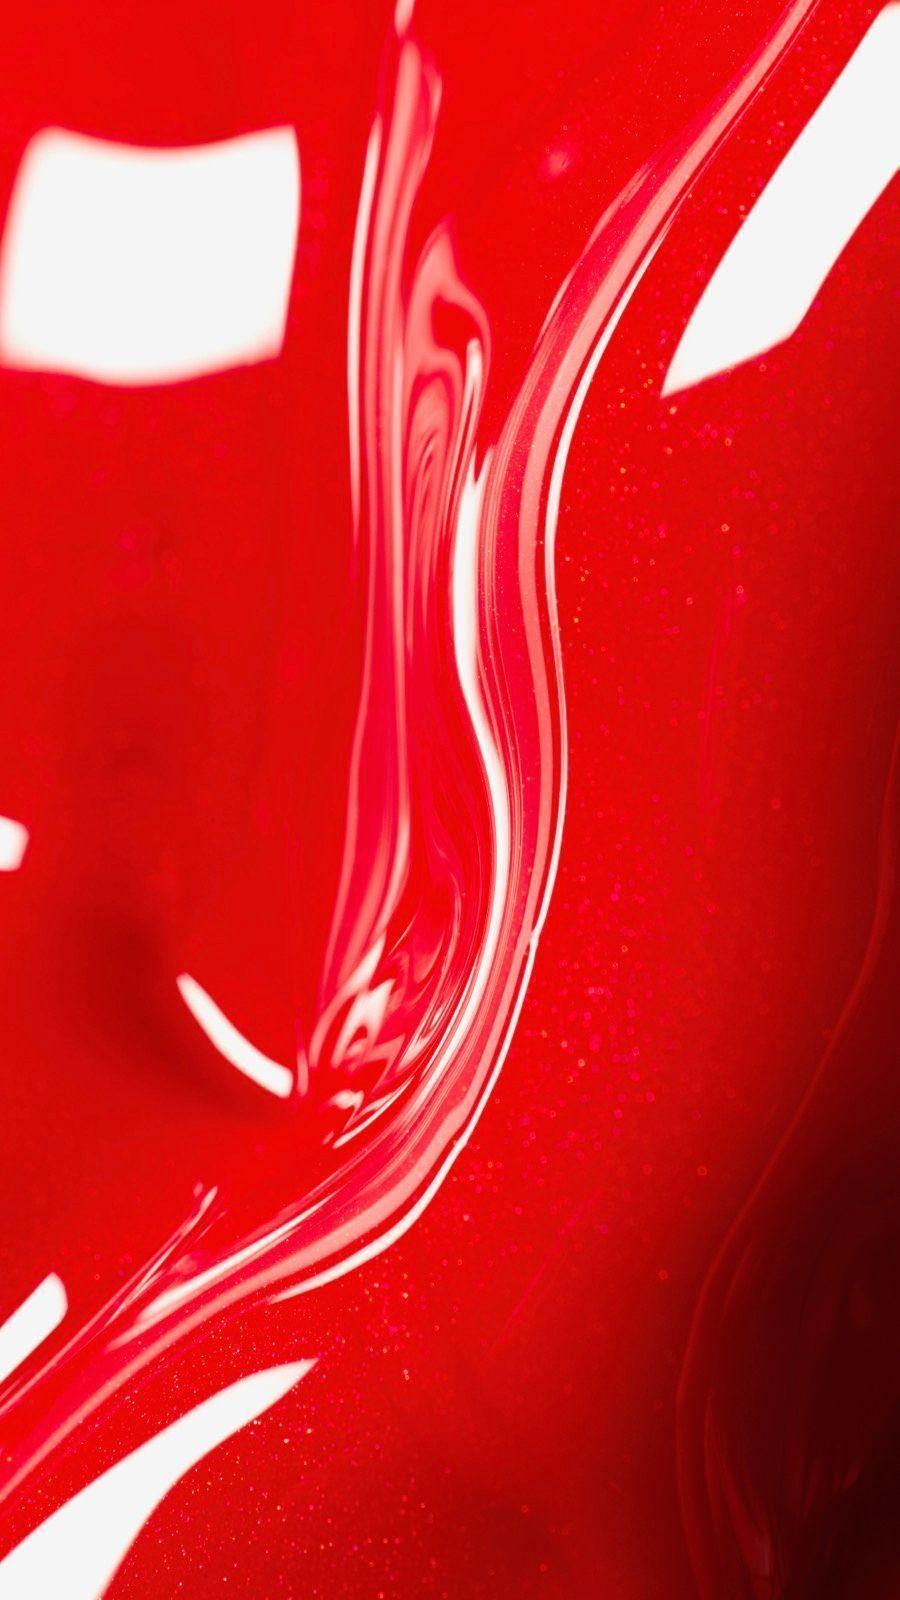 Hình nền đỏ sáng bóng: Hãy thử xem một hình nền đỏ sáng bóng và truyền cảm hứng cho ngày mới! Màu đỏ sẽ giúp tăng cường sự quyết tâm và sự đam mê, đem lại năng lượng cho lúc khởi đầu một ngày. Bạn sẽ thấy mình sẵn sàng đối mặt với bất cứ thử thách nào.